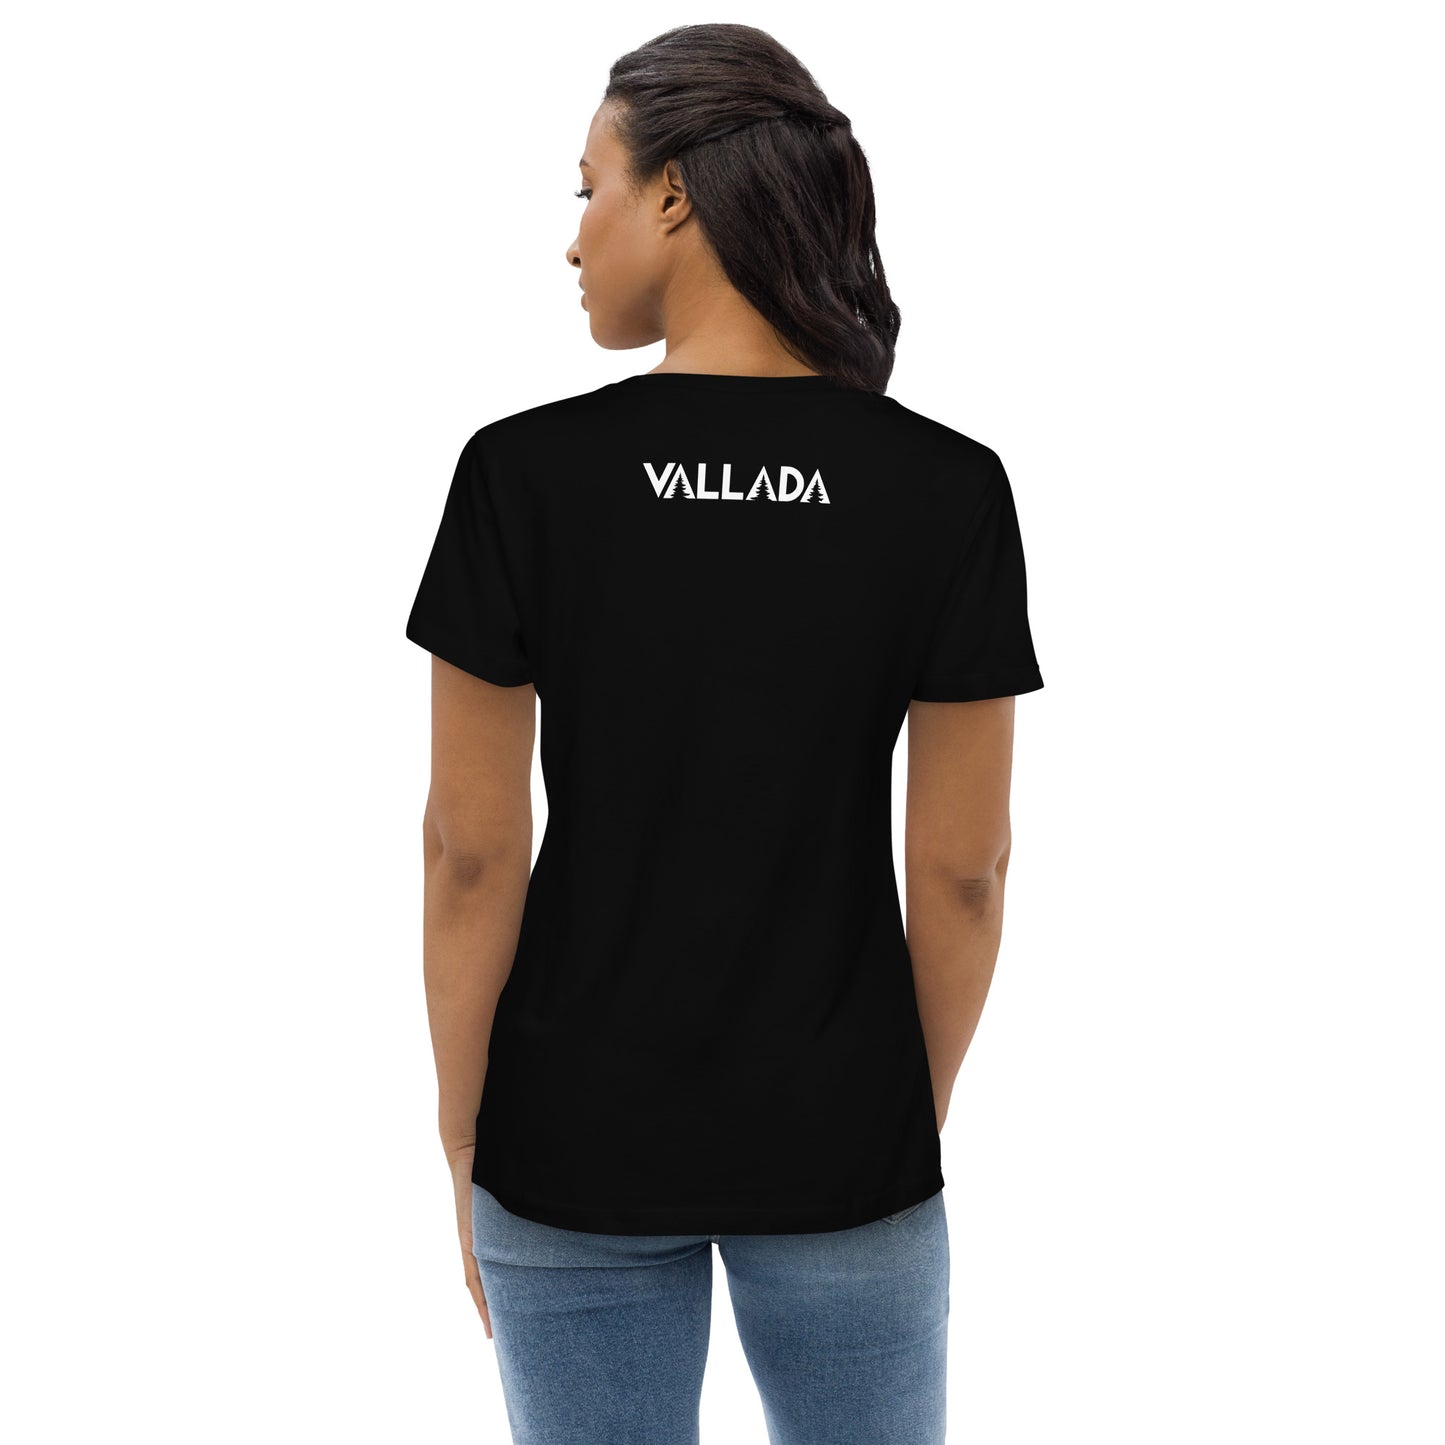 Wir sehen die Rückenansicht des Bodycon-T-Shirts in Schwarz von Vallada. Im oberen Bereich des taillierten T-Shirts sehen wir das Vallada-Logo.